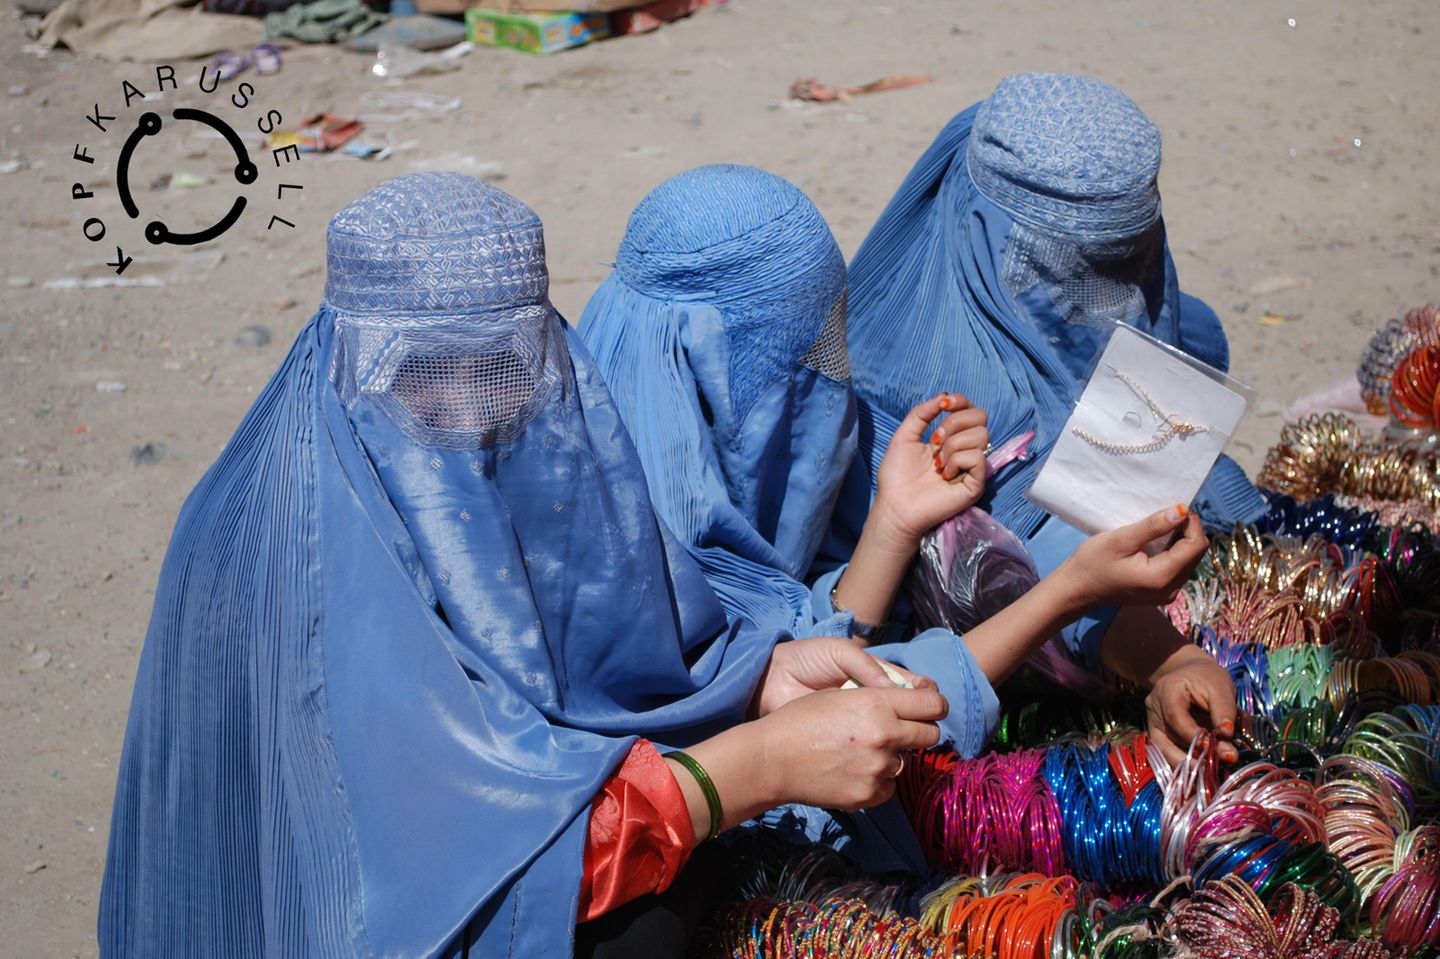 drei afghanische Frauen in traditionellen blauen Burkas schauen sich Armreifen an